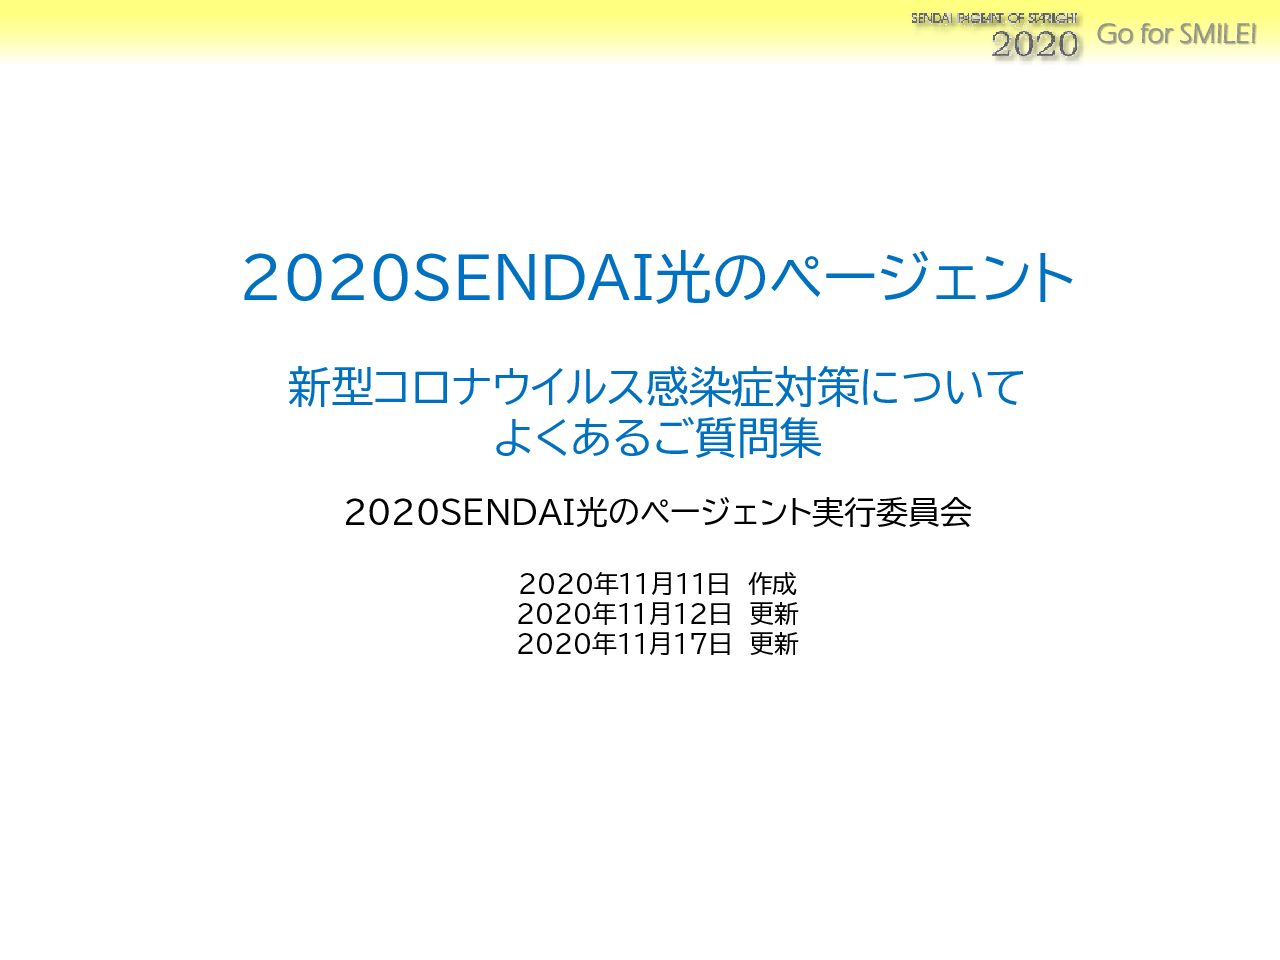 2023 SENDAI光のページェント